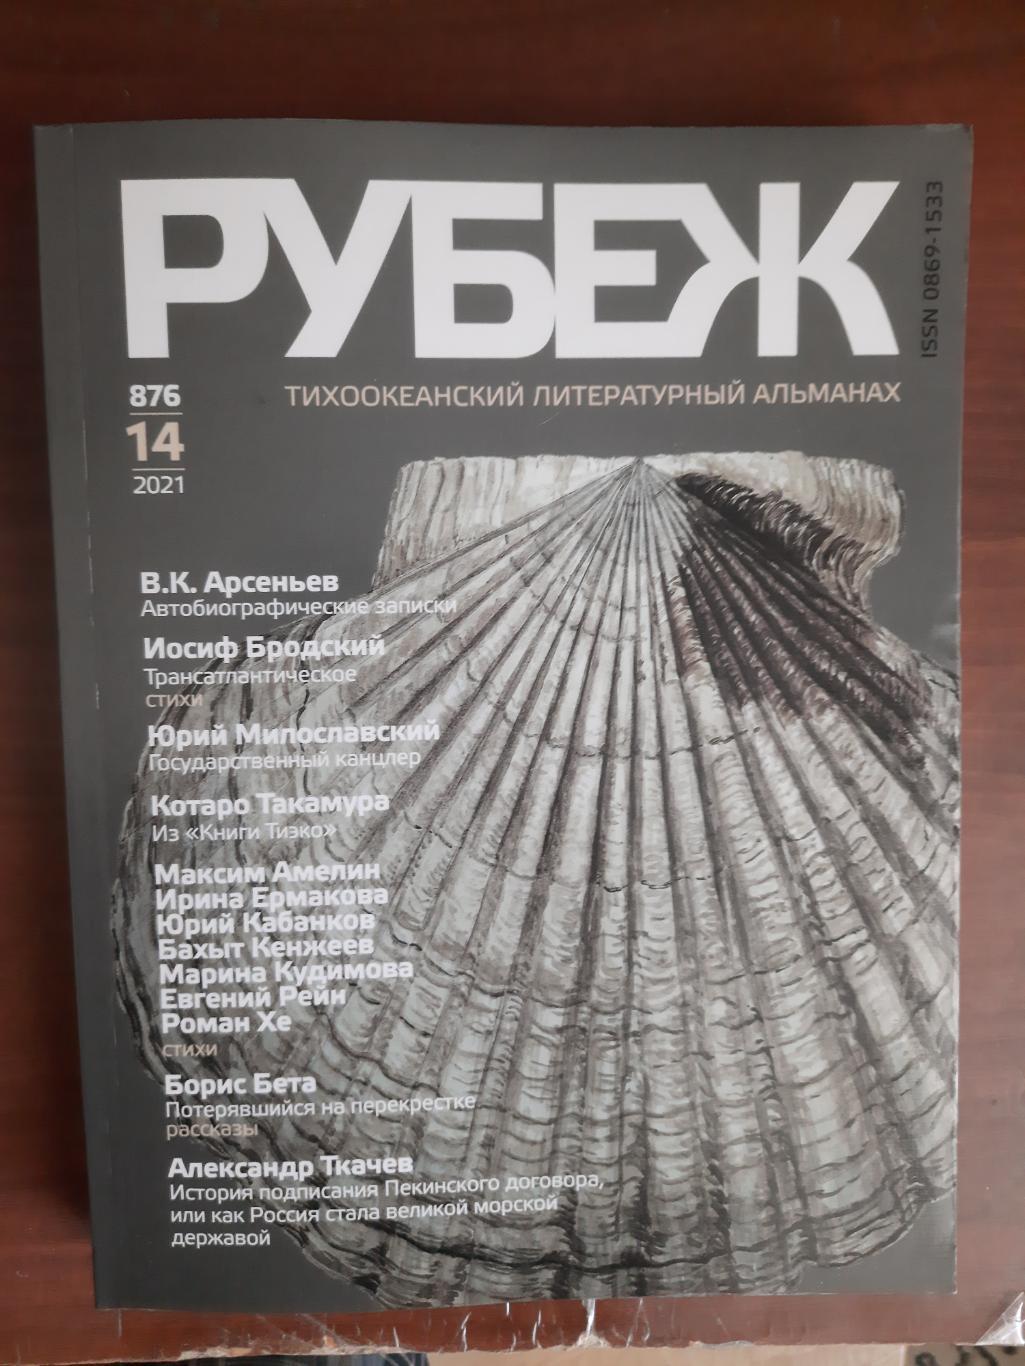 Тихоокеанский литературный альманах Рубеж № 14 2021 год (Владивосток)